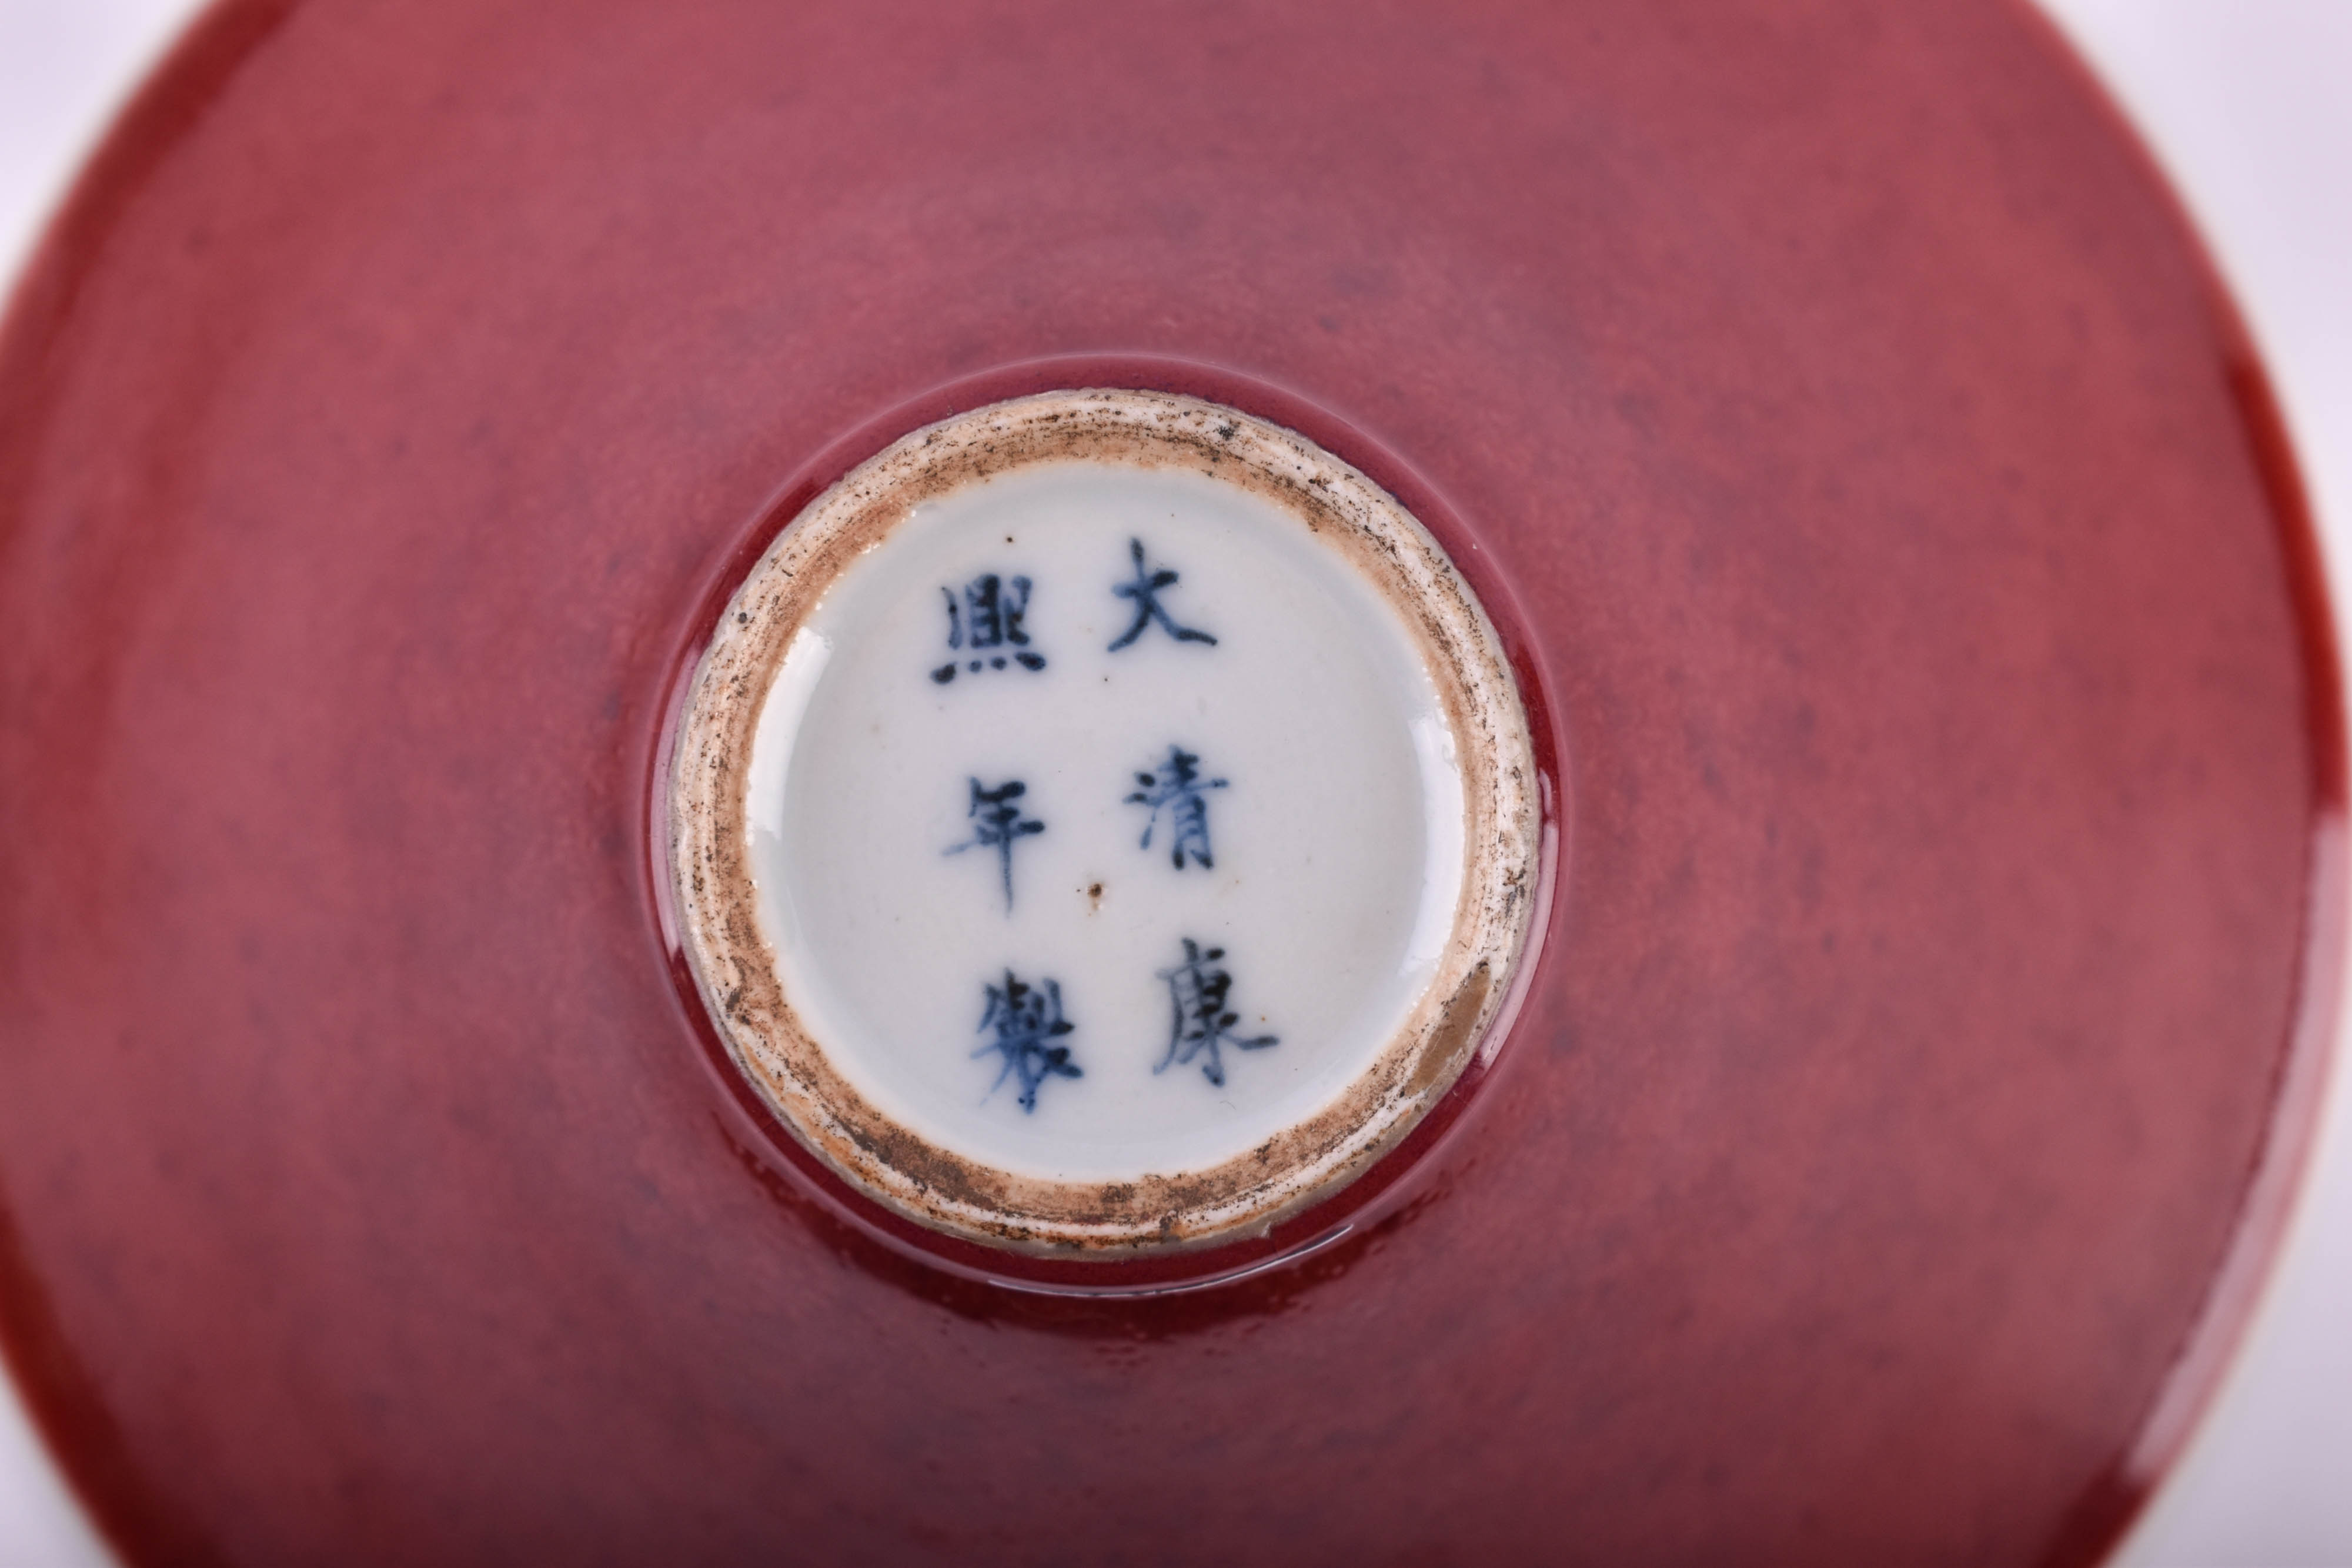  Jun Hong foot bowl China Qing dynasty 18th / 19th century - Image 8 of 8